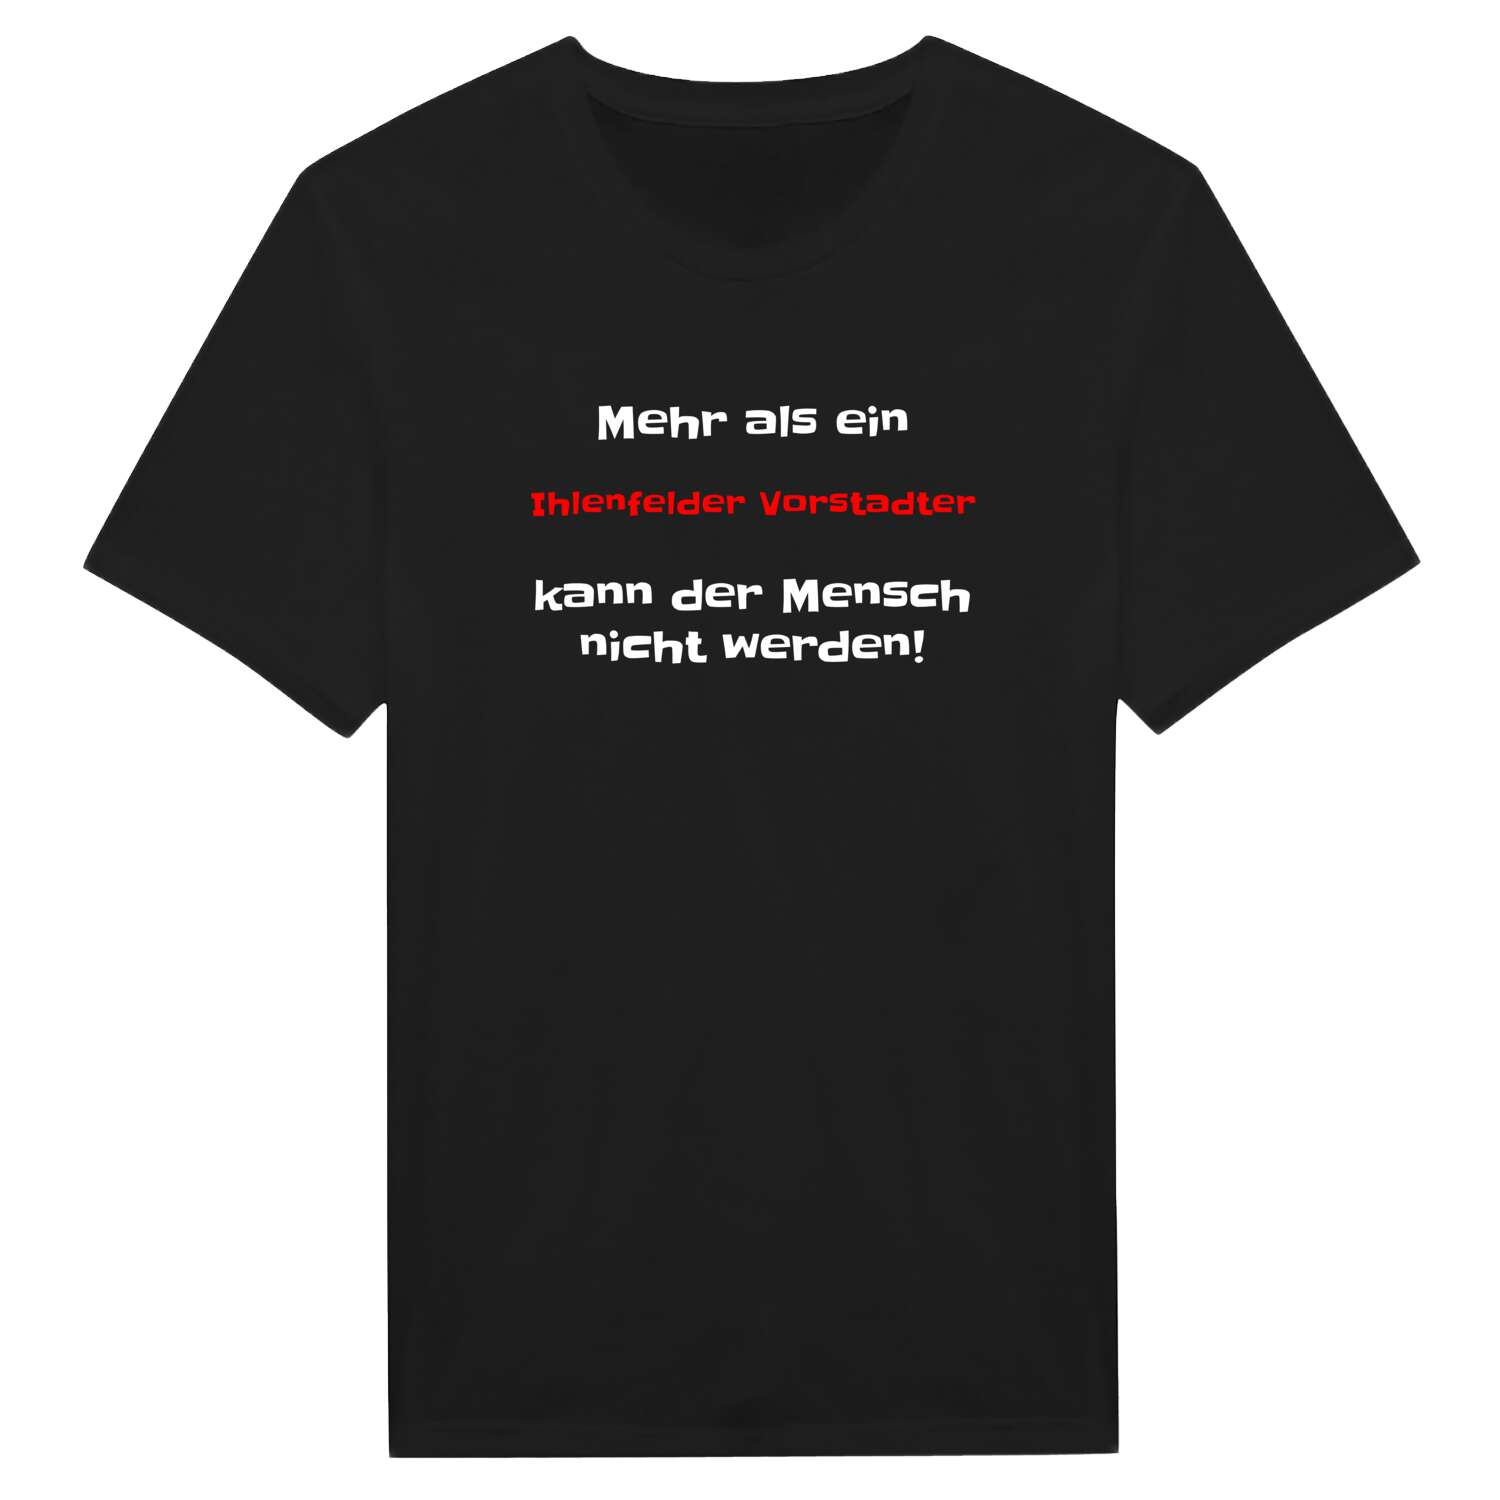 Ihlenfelder Vorstadt T-Shirt »Mehr als ein«